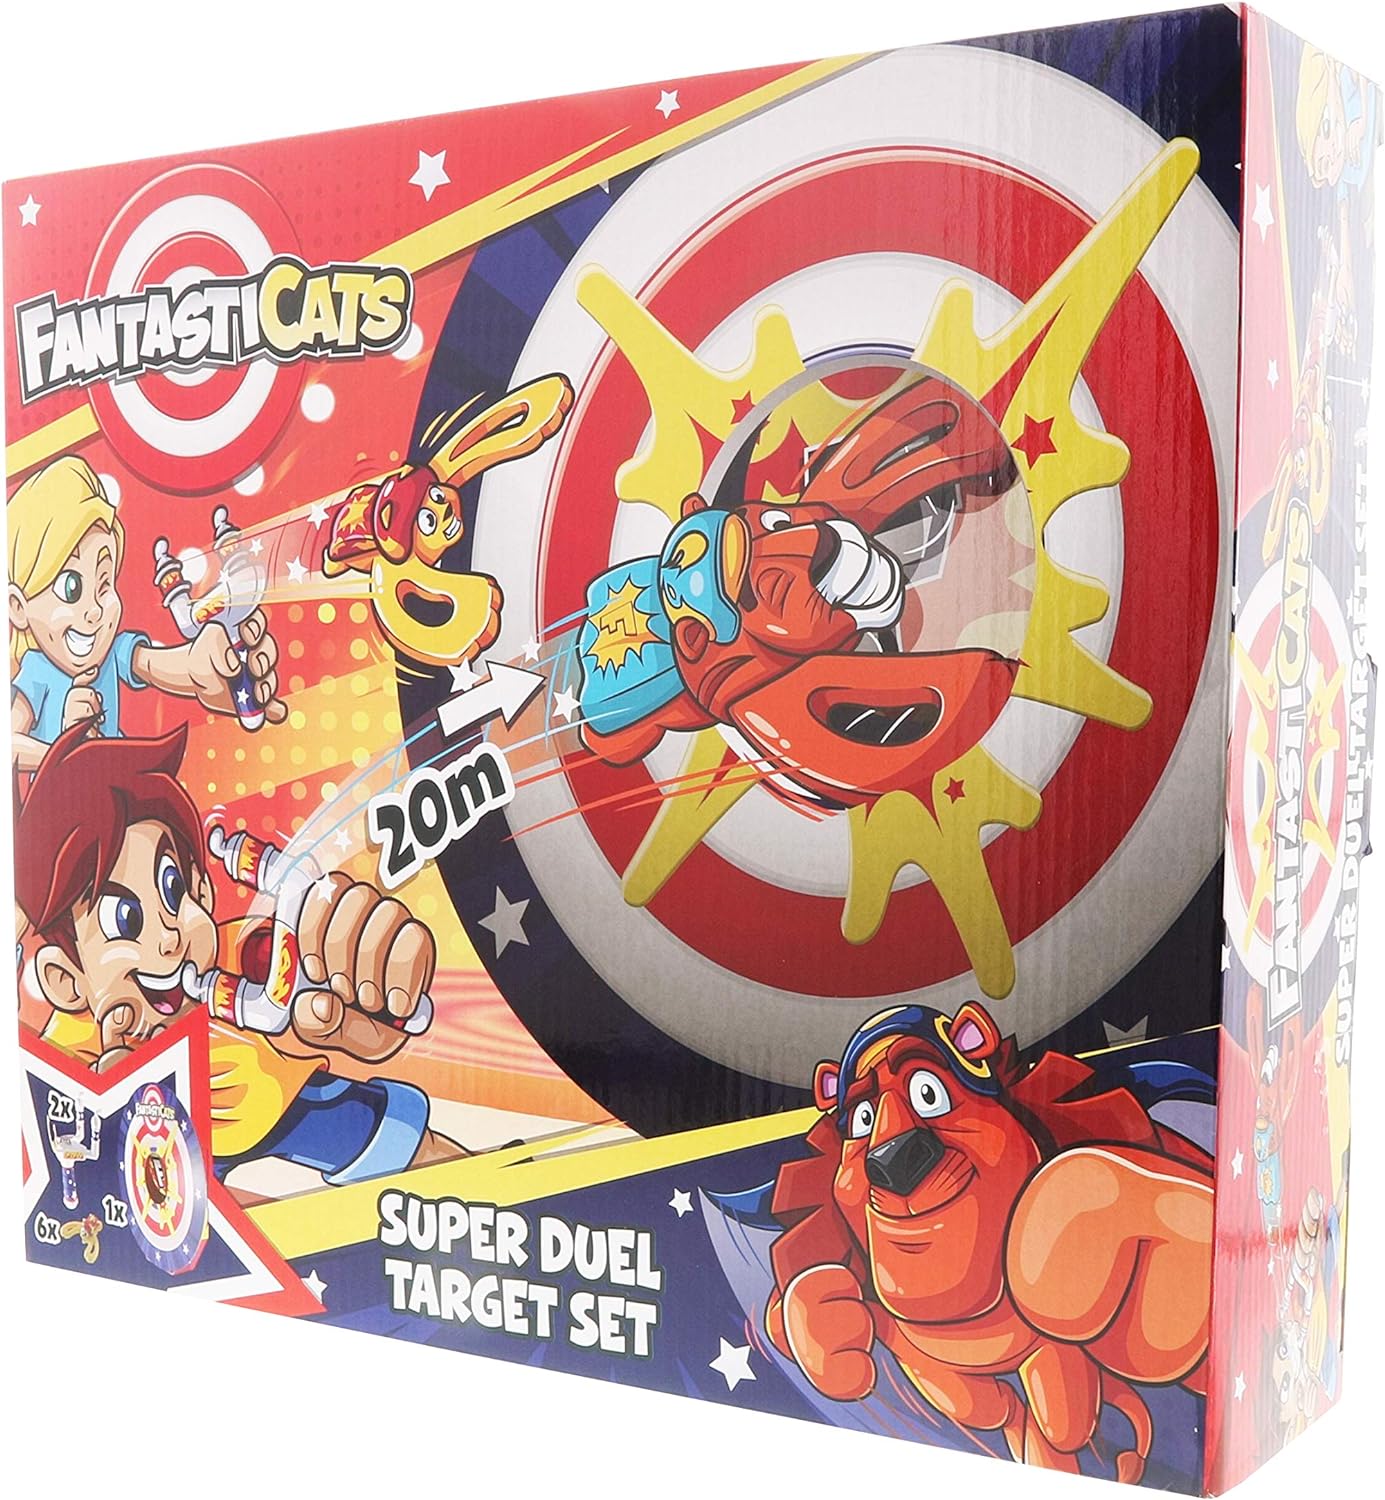 Fantasti-Cats Super Duel Target Set